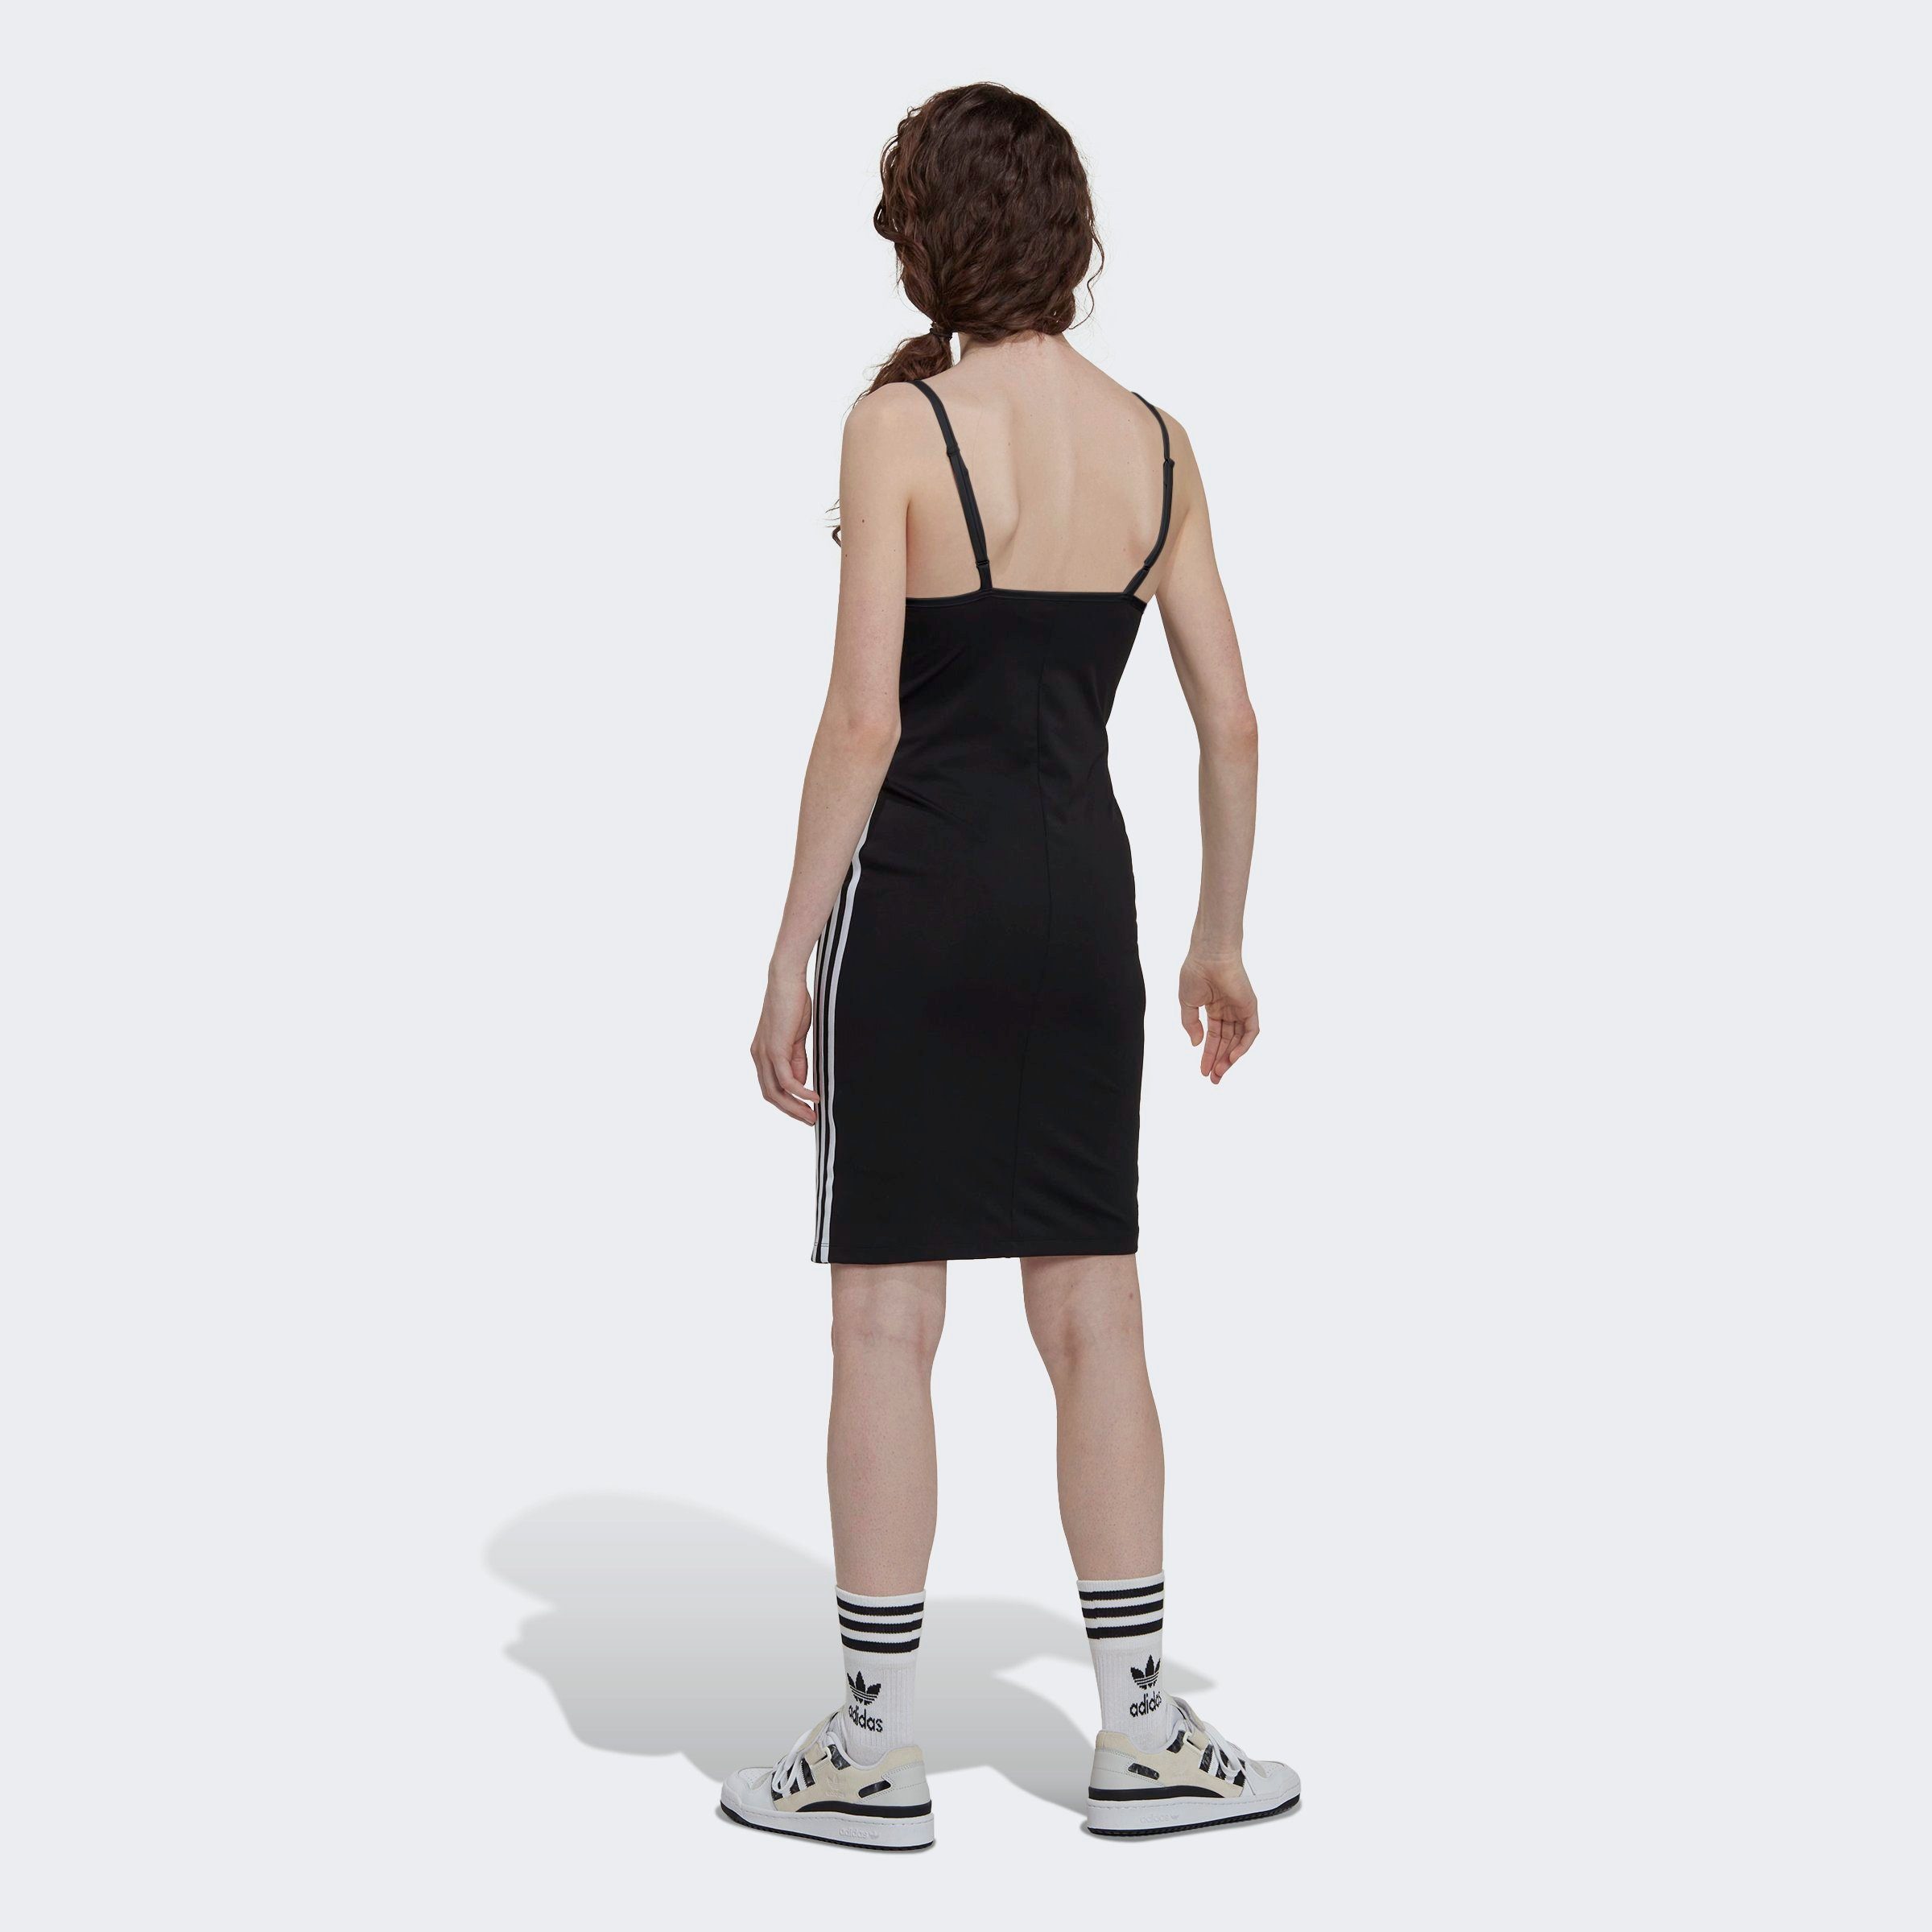 KLEID ALWAYS Sommerkleid adidas LACED STRAP BLACK ORIGINAL Originals